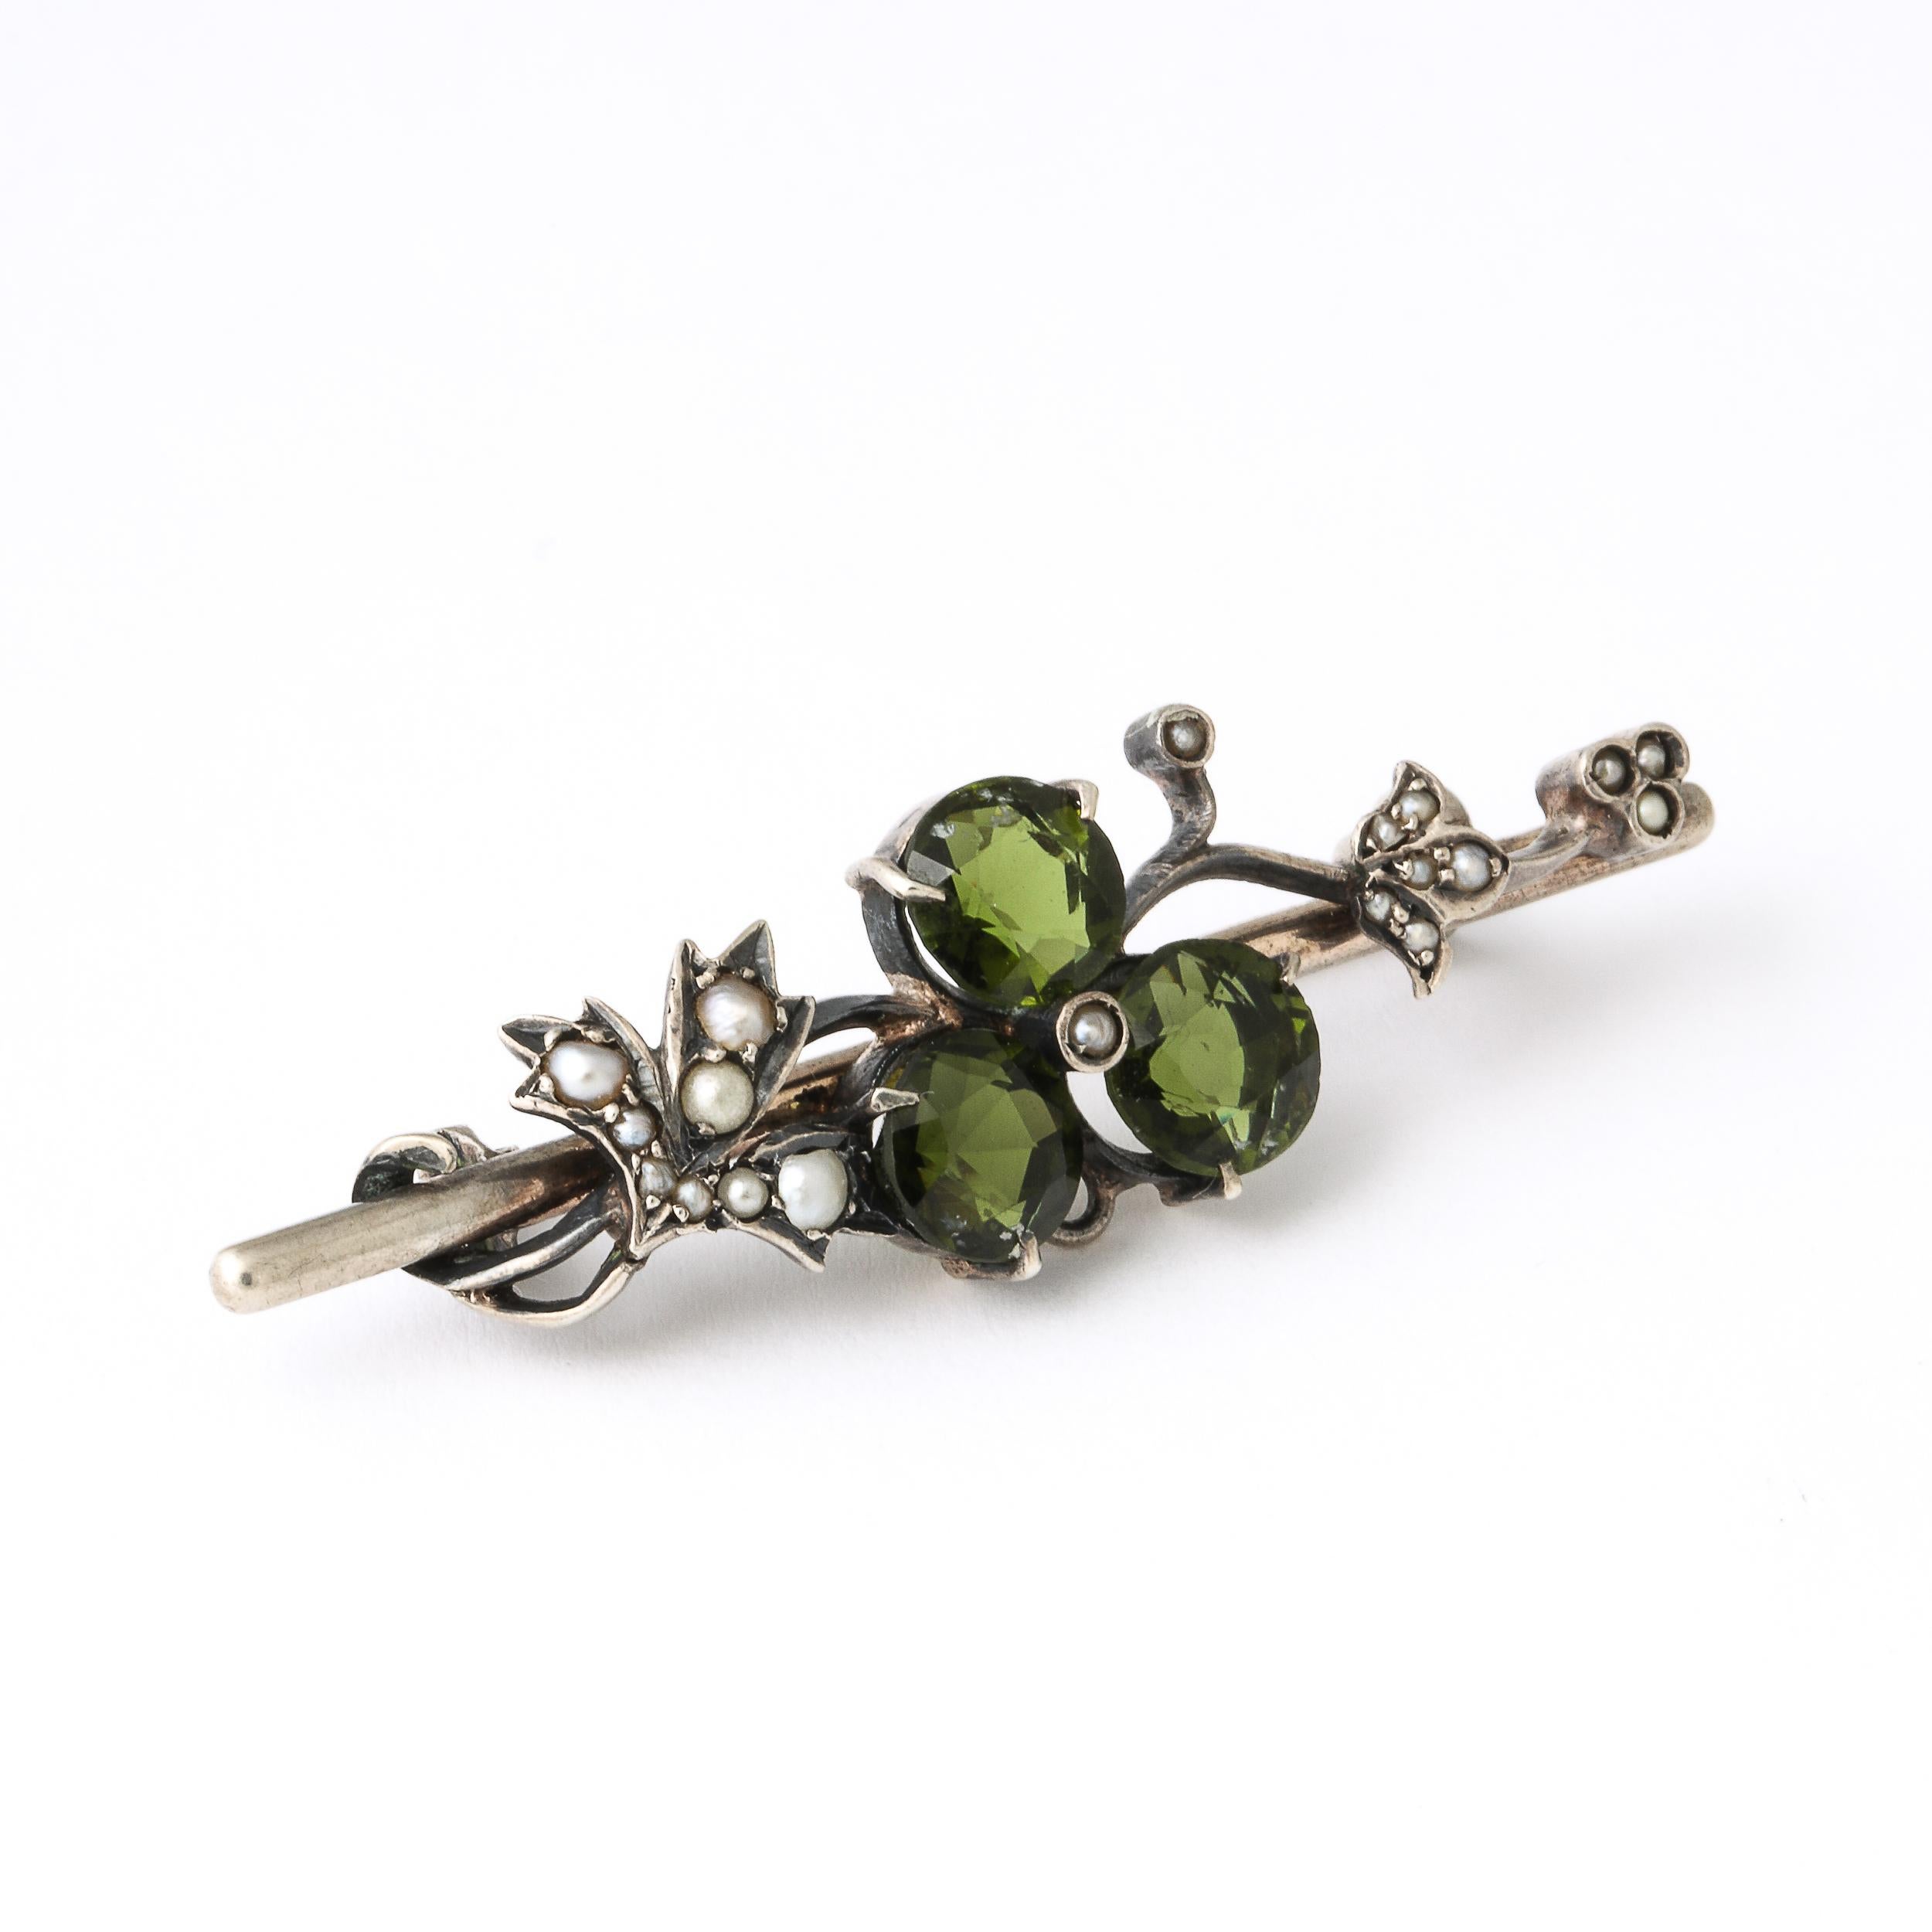 Diese  Antike Art Nouveau kontinentalen Silber floralen Bar Pin zeigt eine einzelne Blume, bestehend aus 3 runden und geschliffenen Peridots und eine zentrale Perle mit einer Umgebung von Blättern eingelegt in ganz mit Perlen Akzente. Auf der